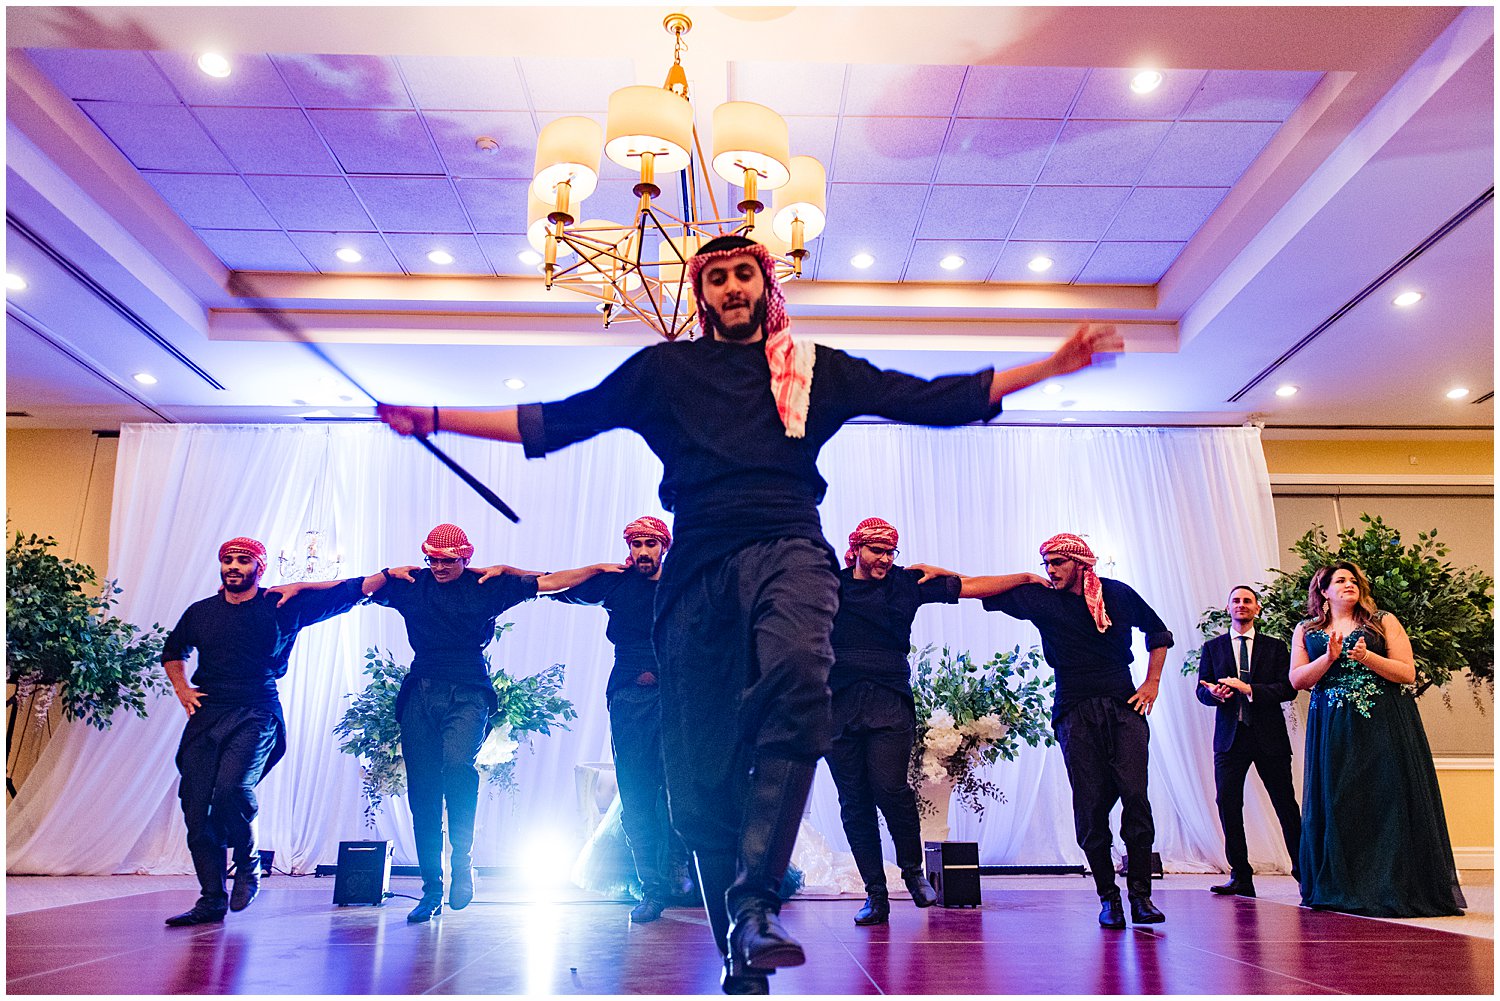 Muslim Wedding at Ambassador Golf Club in Windsor 